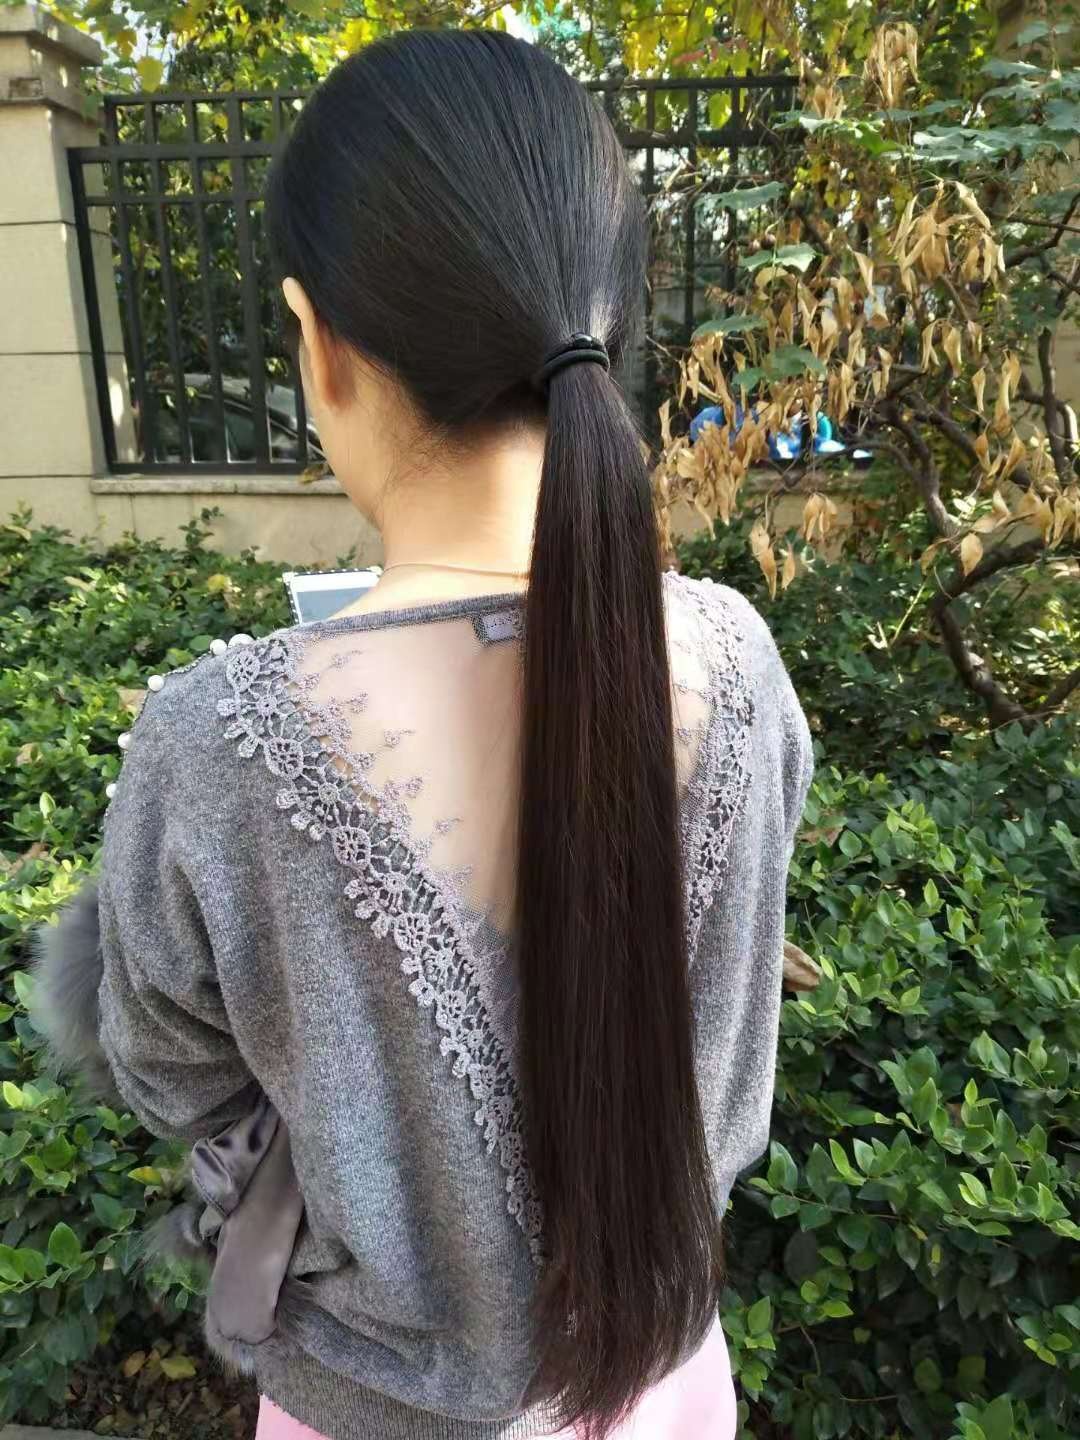 上海闵行收头发图片